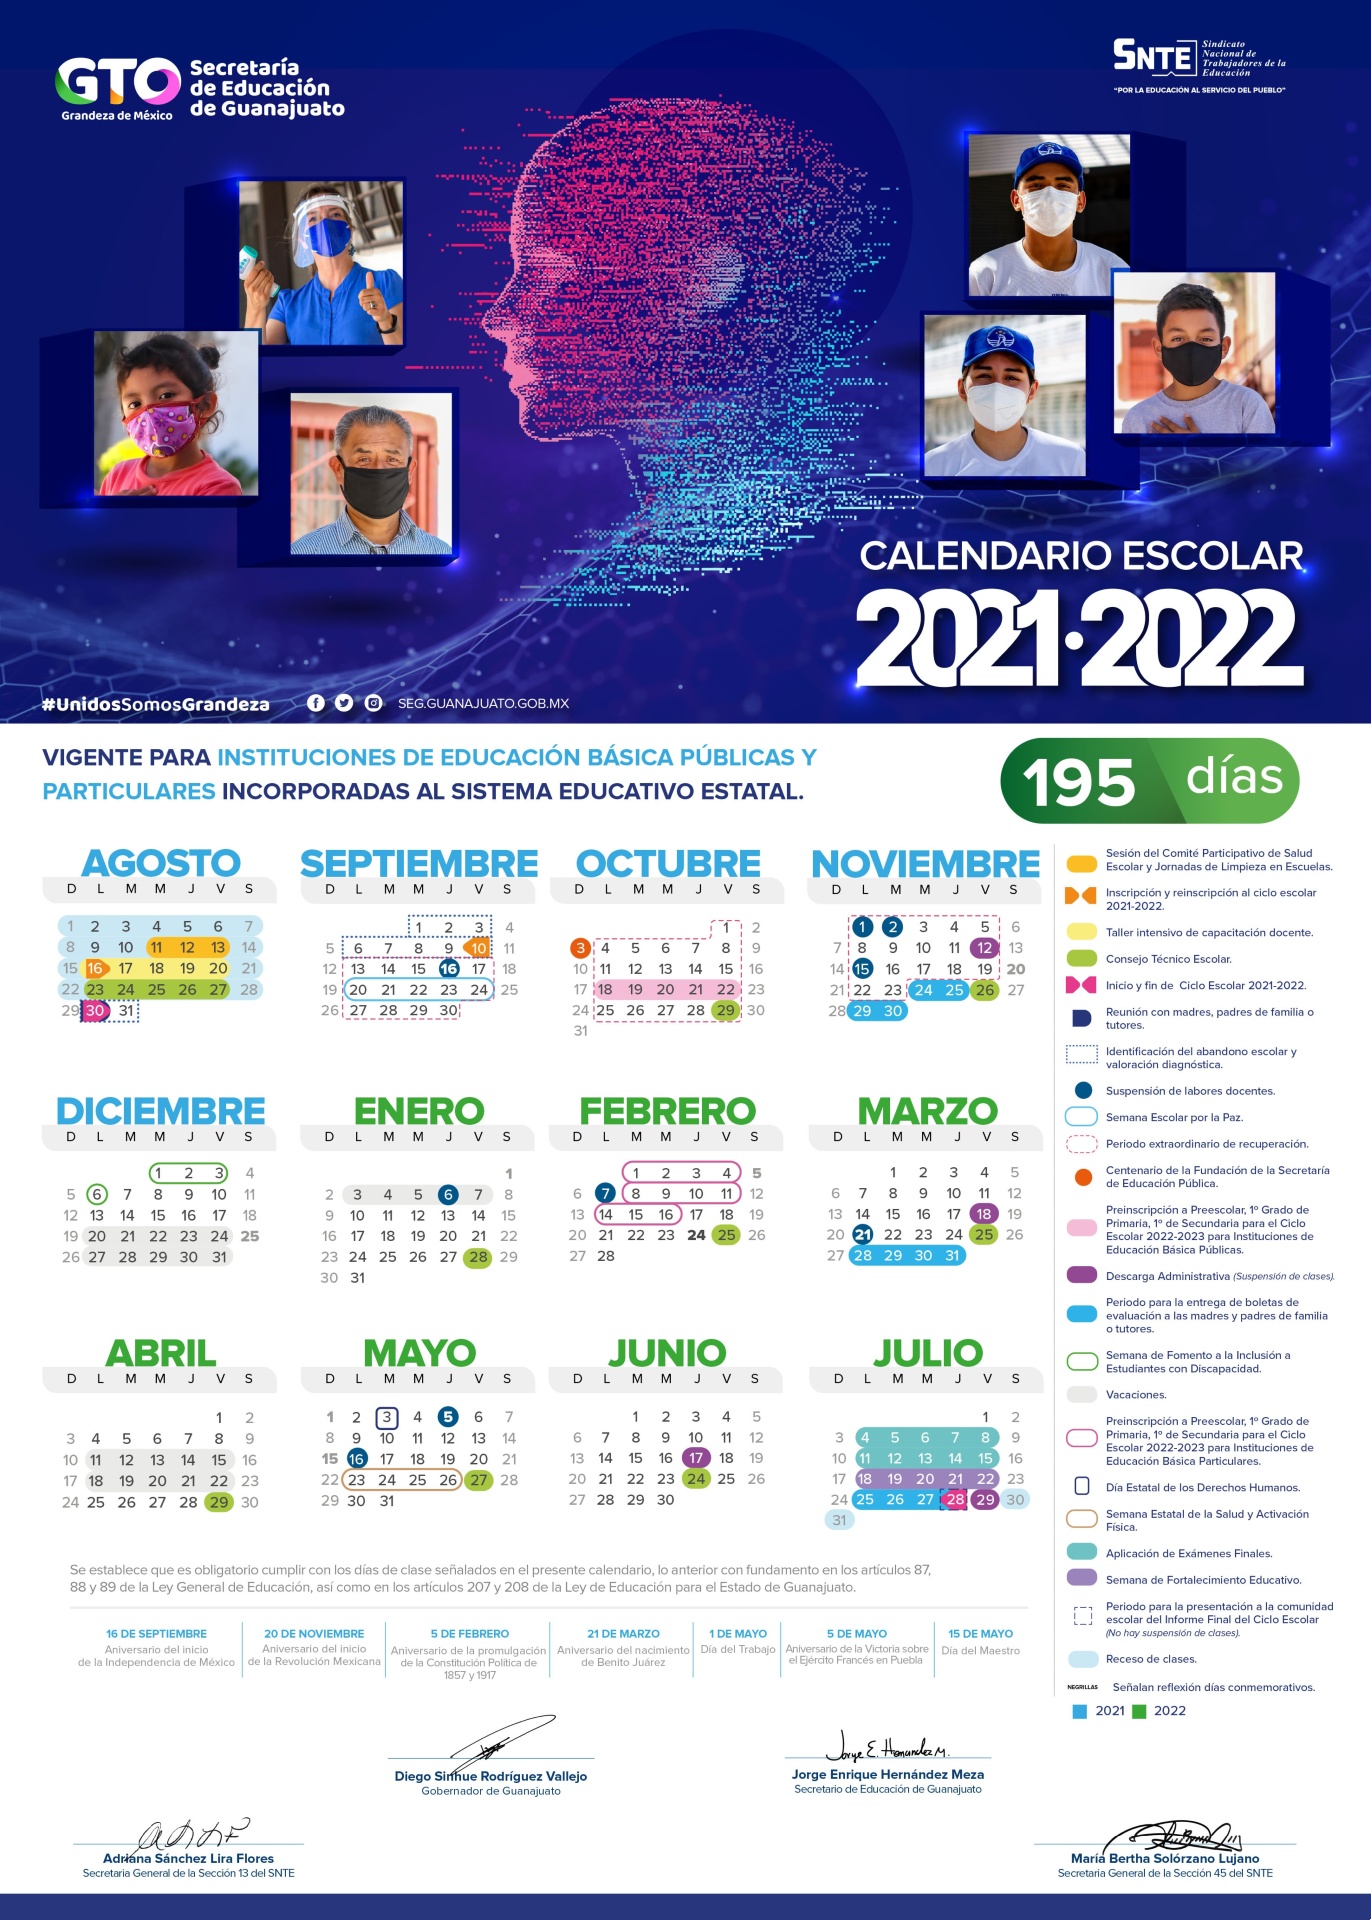 CALENDARIO ESCOLAR 2021 2022 GUANAJUATO